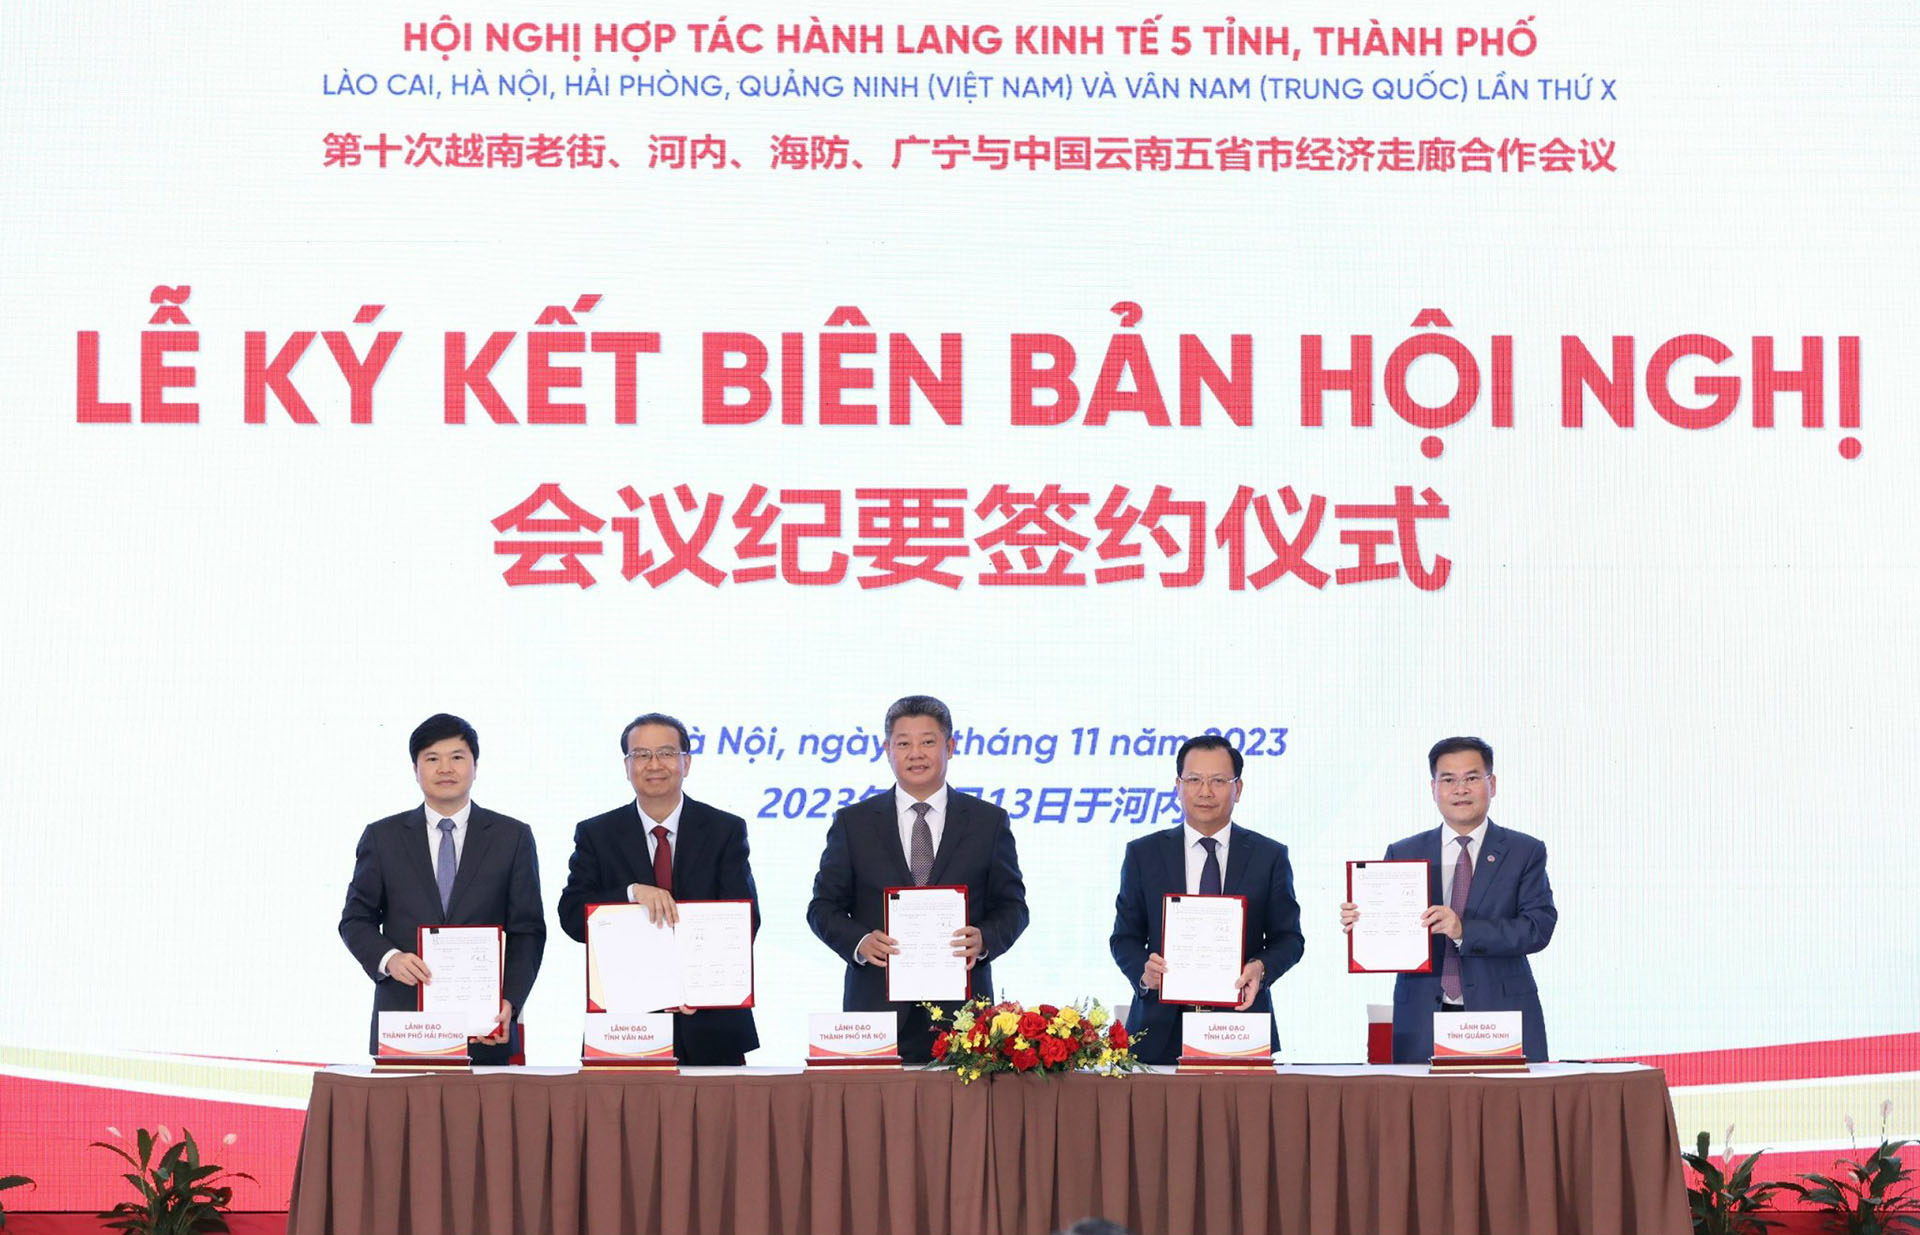 6 hơn trong thúc đẩy quan hệ Việt Nam - Trung Quốc